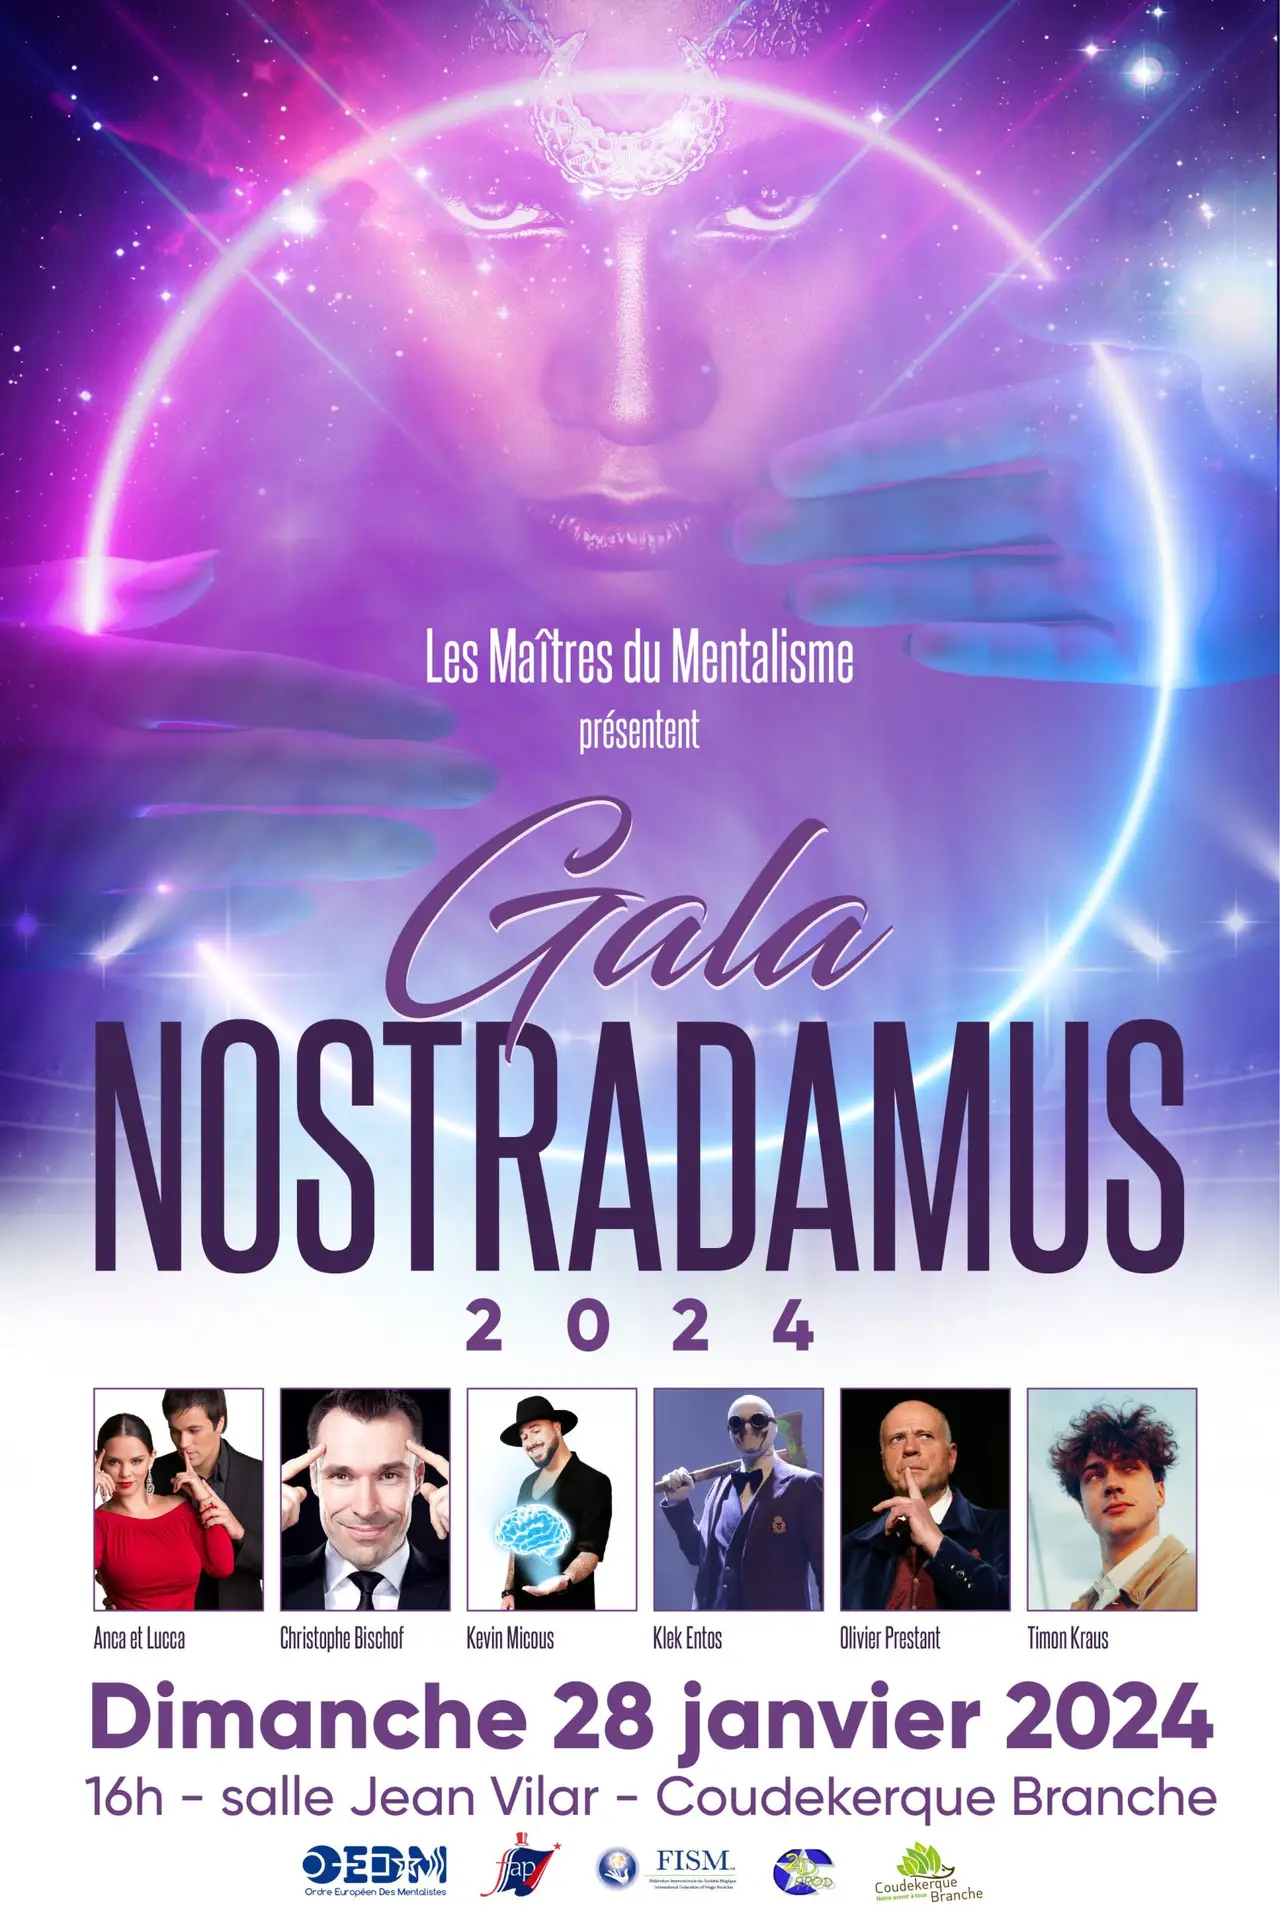 Affiche du gala Nostradamus 2024